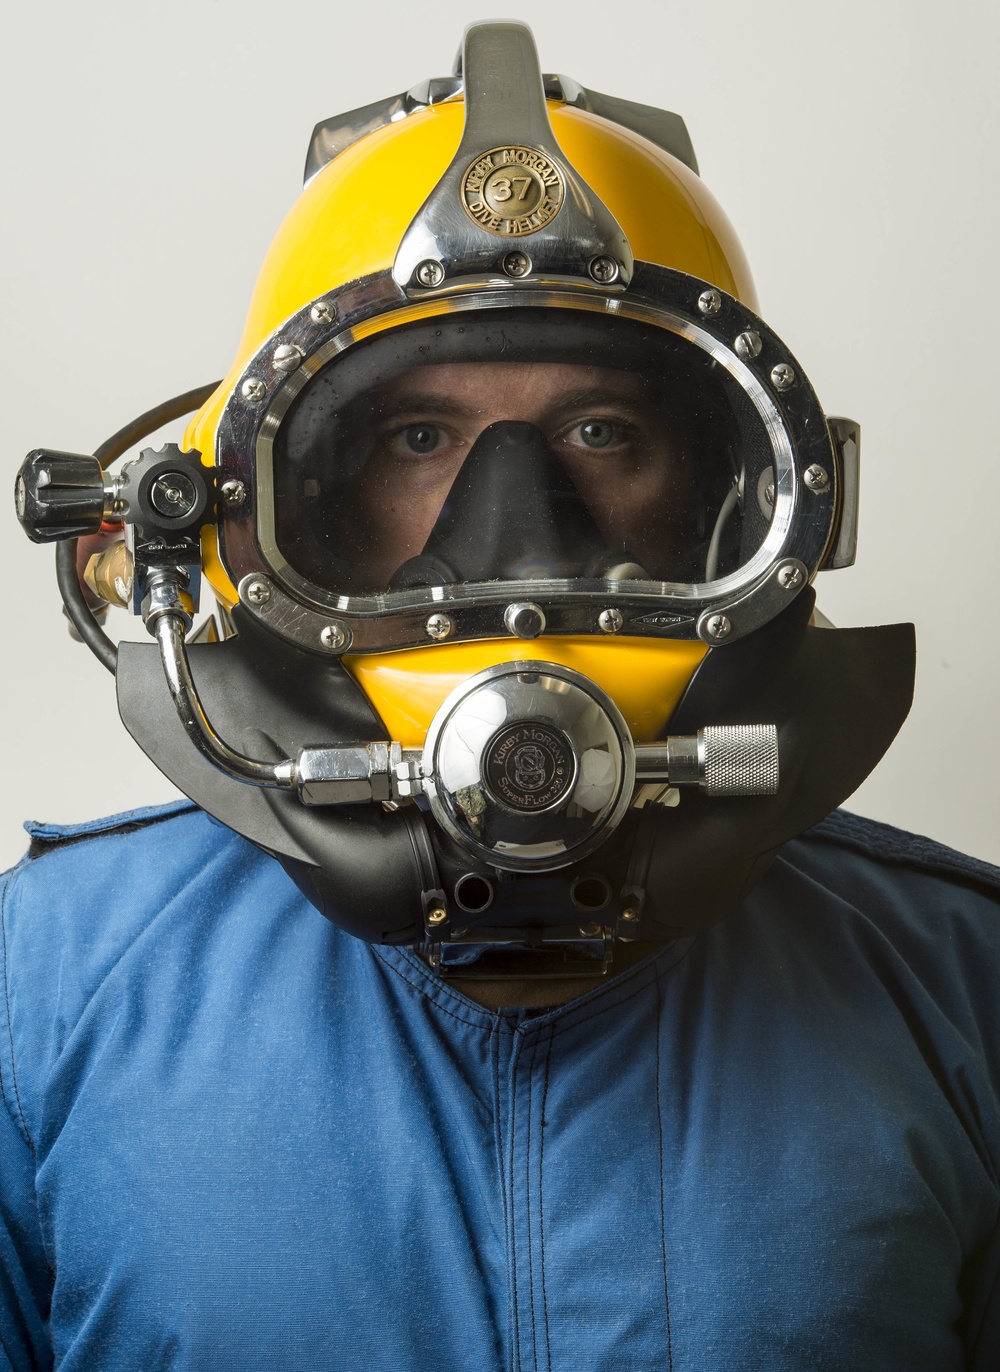 Navy Diver Portrait